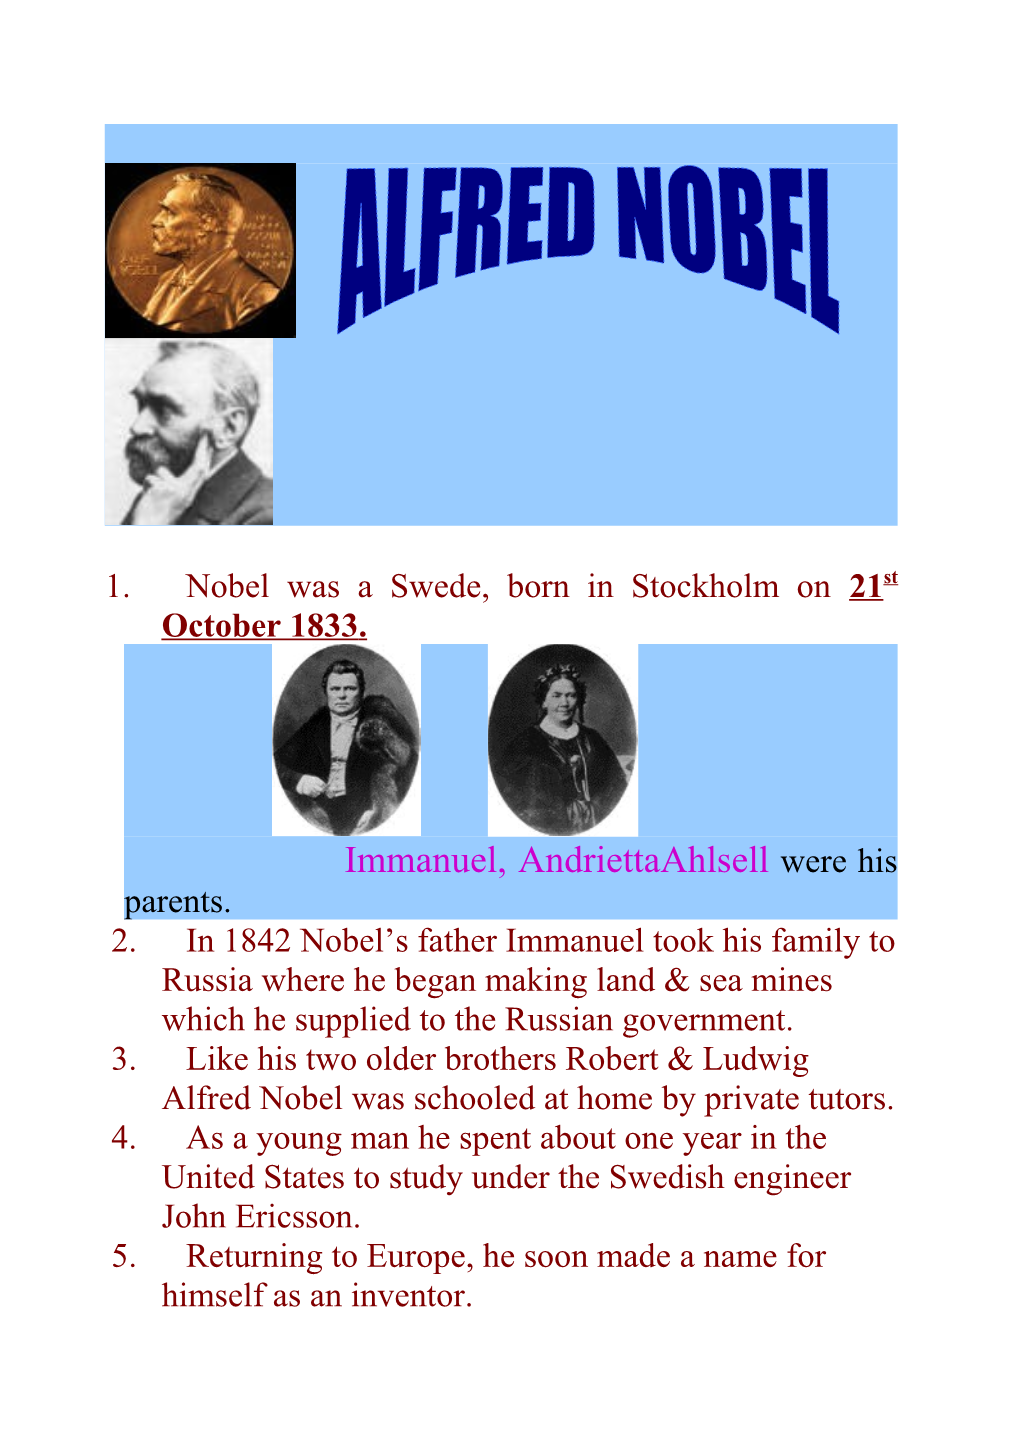 1. Nobel Was a Swede, Born in Stockholm on 21St October 1833